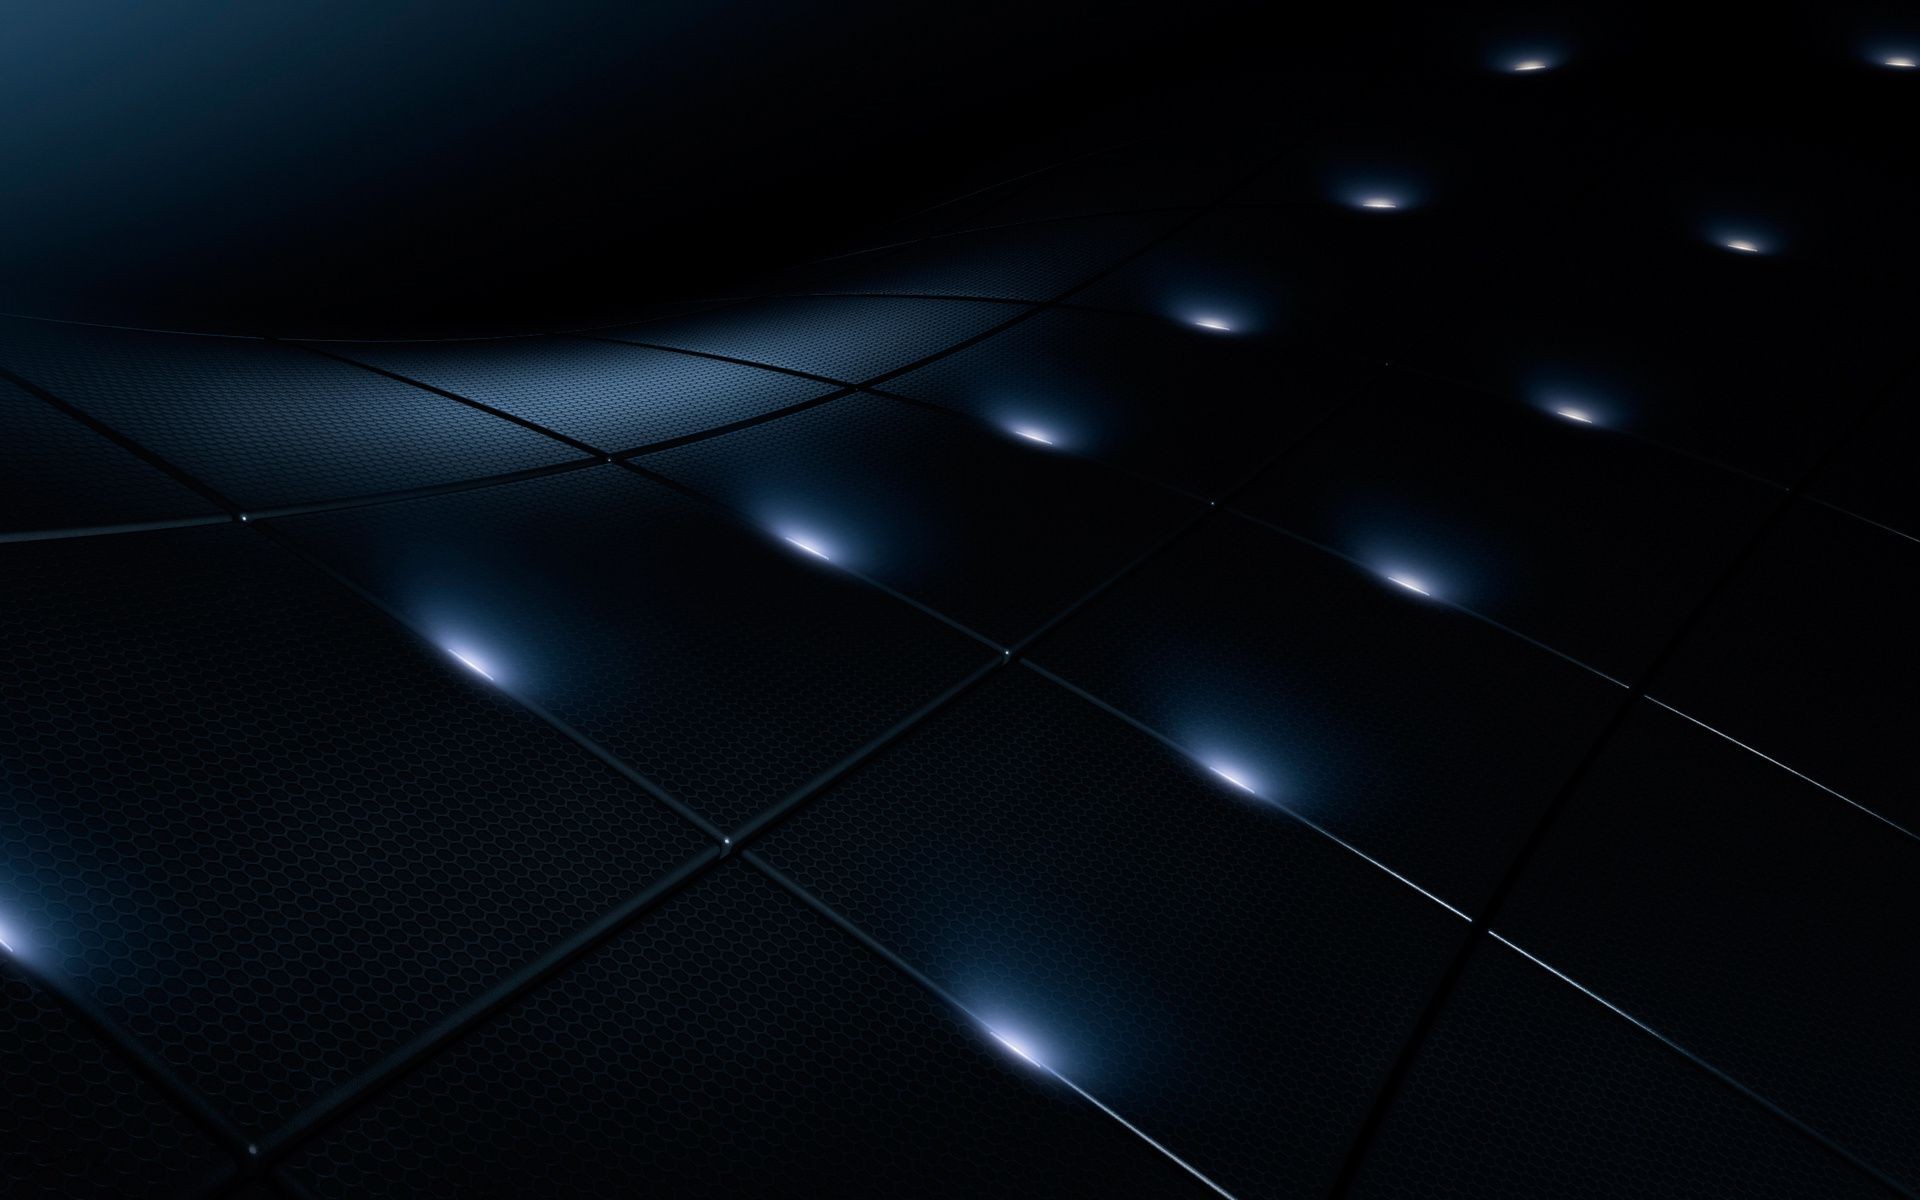 геометрические фигуры аннотация свет темный рабочего стола яркий искусство дизайн футуристический формы пространство современные